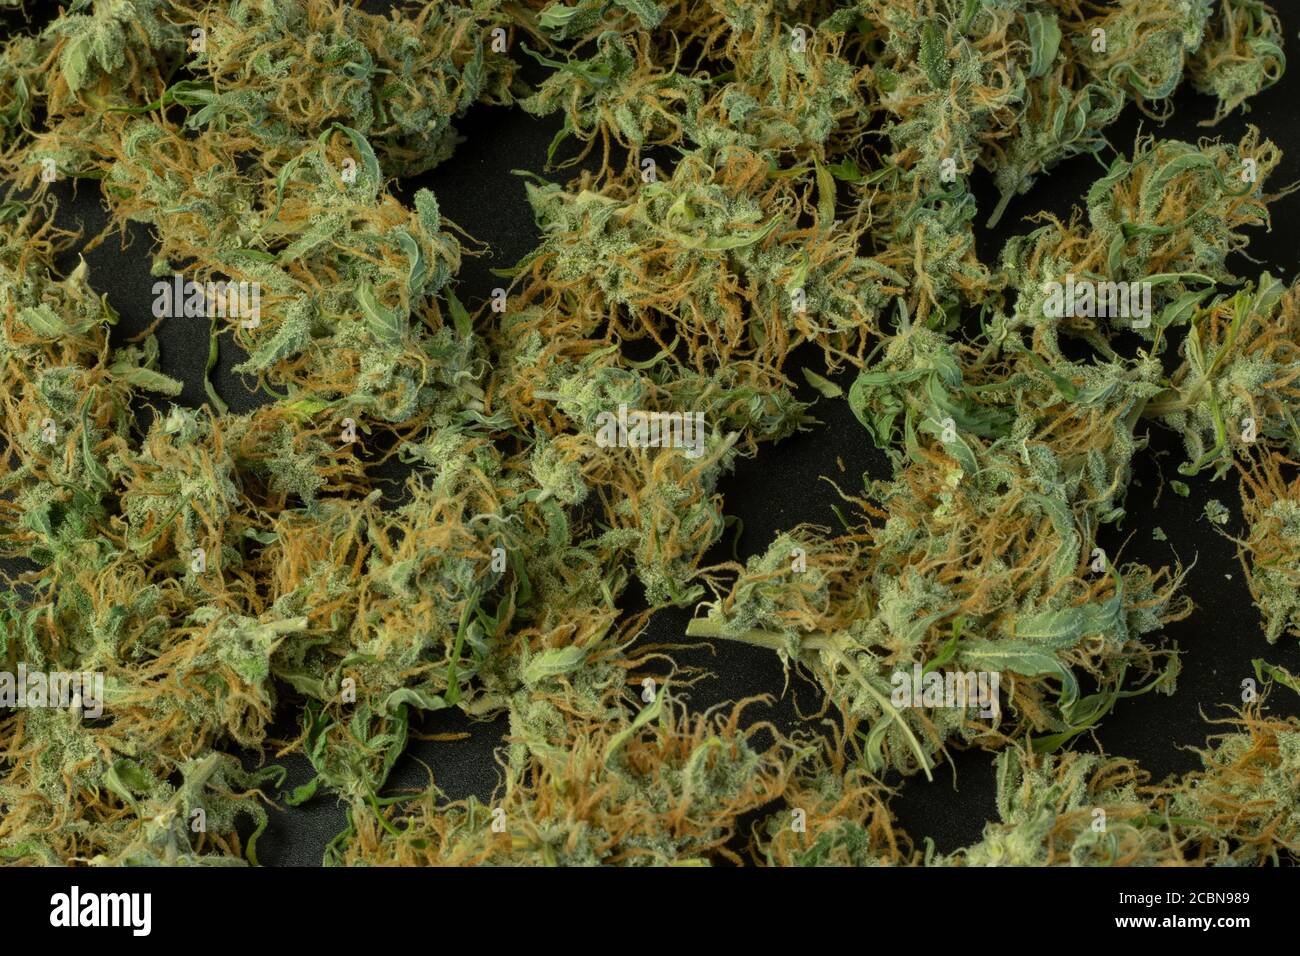 Le cannabis, les bourgeons de marijuana en gros plan, les mauvaises herbes à plat se moquent Banque D'Images